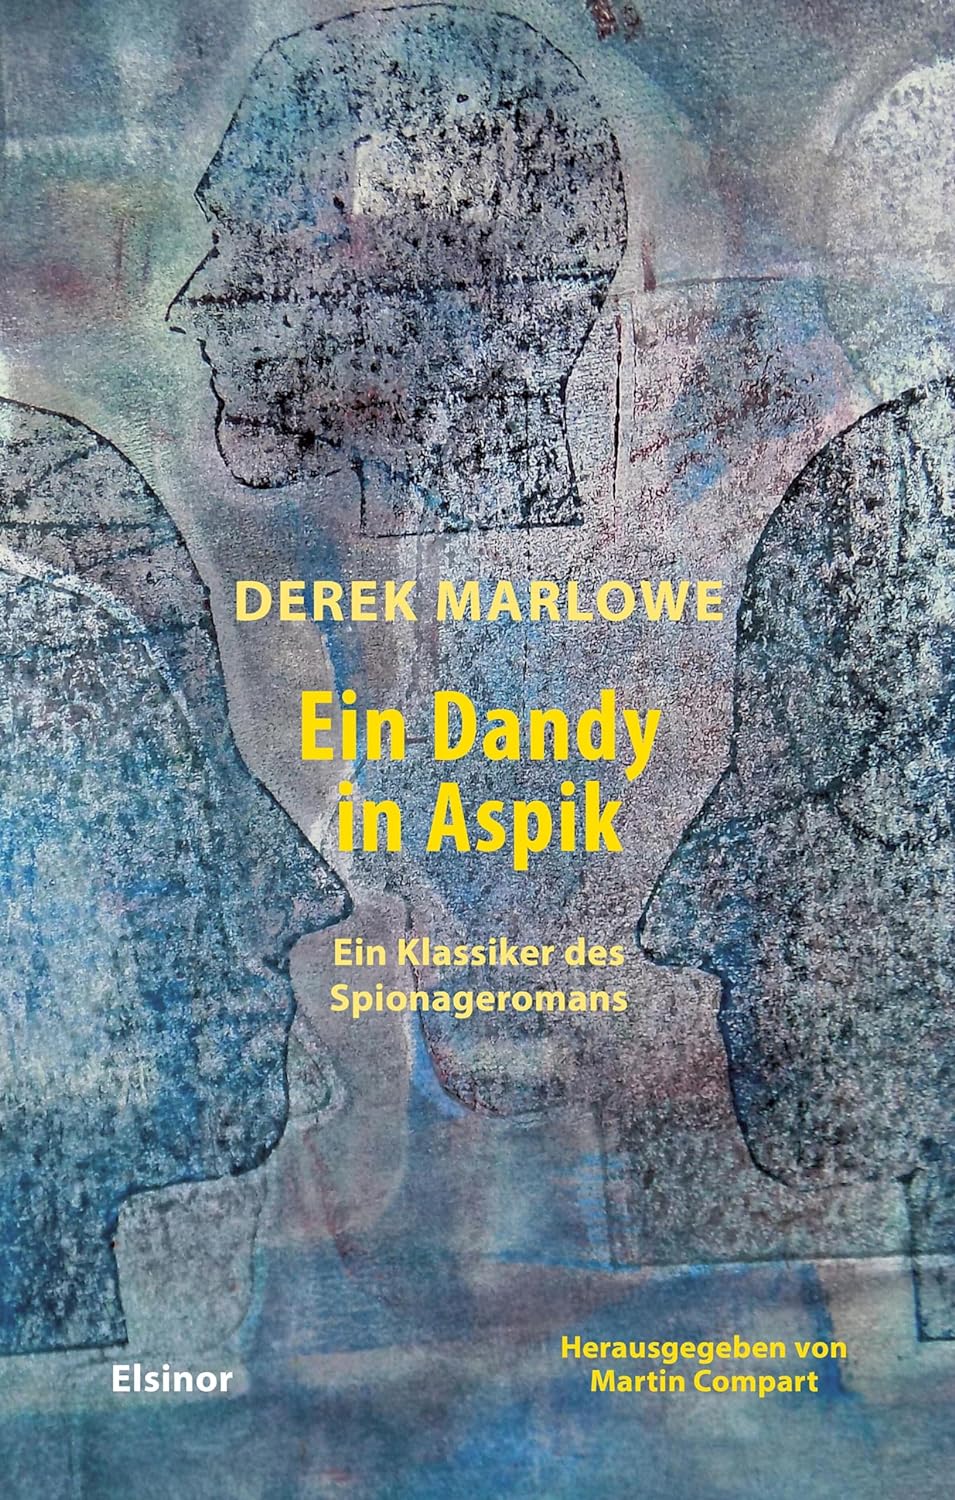 #
„Ein Dandy in Sülze“ von Derek Marlowe